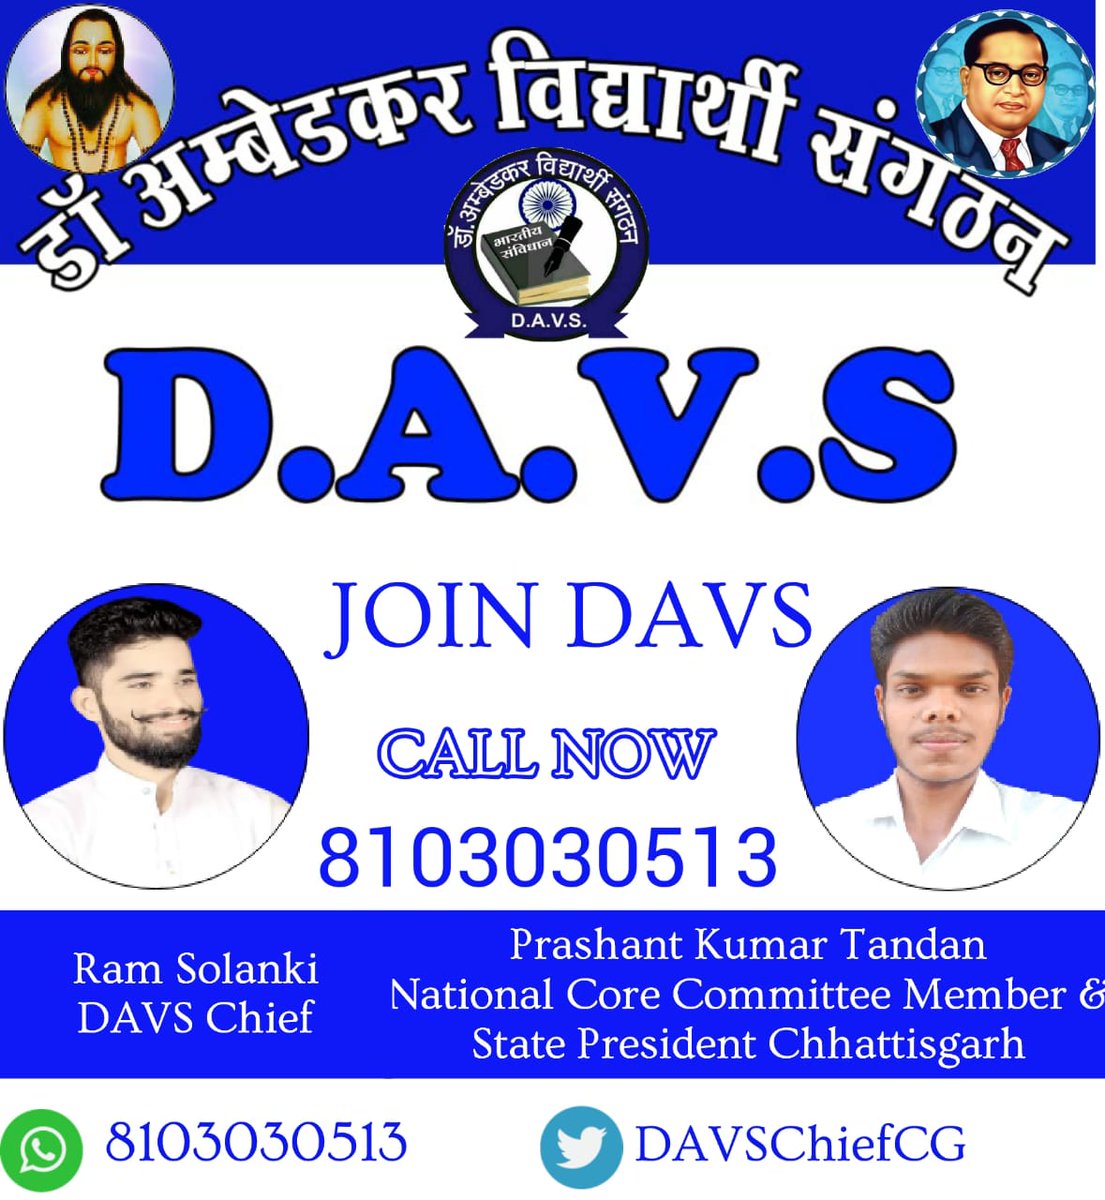 @DAVSChiefCG
8103030513
#Join_DAVS
#Join_DAVS
#Join_DAVS
#Join_DAVS
#Join_DAVS
#Join_DAVS
#Join_DAVS
#Join_DAVS
#Join_DAVS
#Join_DAVS
#Join_DAVS
#Join_DAVS
#Join_DAVS
#Join_DAVS
#Join_DAVS
#Join_DAVS
#Join_DAVS
#Join_DAVS
#Join_DAVS
#Join_DAVS
#Join_DAVS
#Join_DAVS
#Join_DAVS